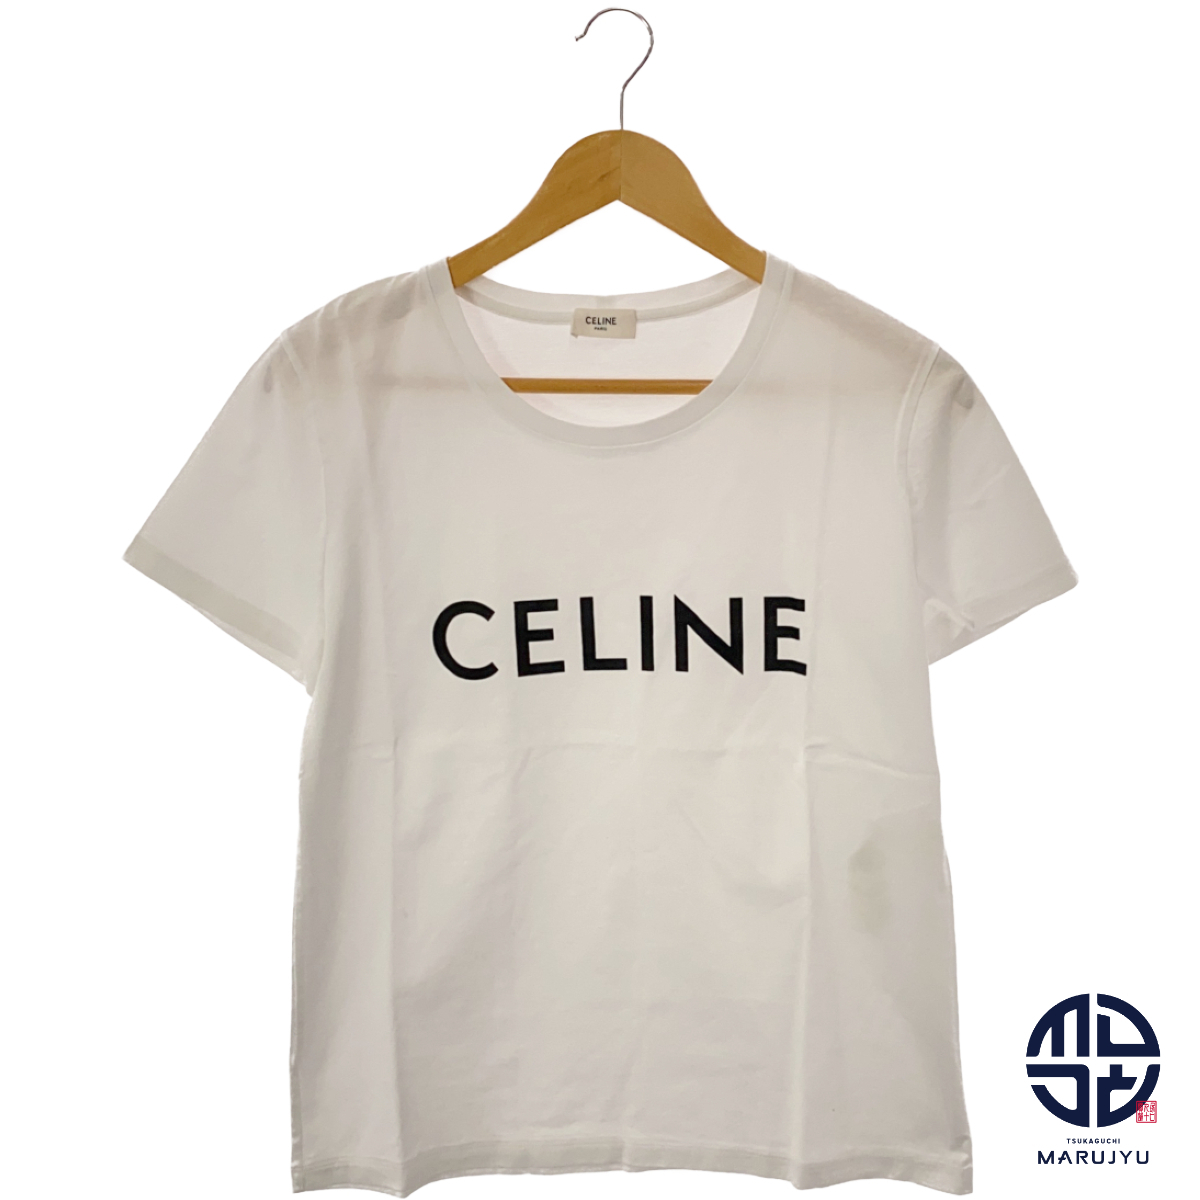 CELINE セリーヌ ロゴ Tシャツ 白 ホワイト 2X314916G ブランド アパレル レディース Lサイズ 服_画像1